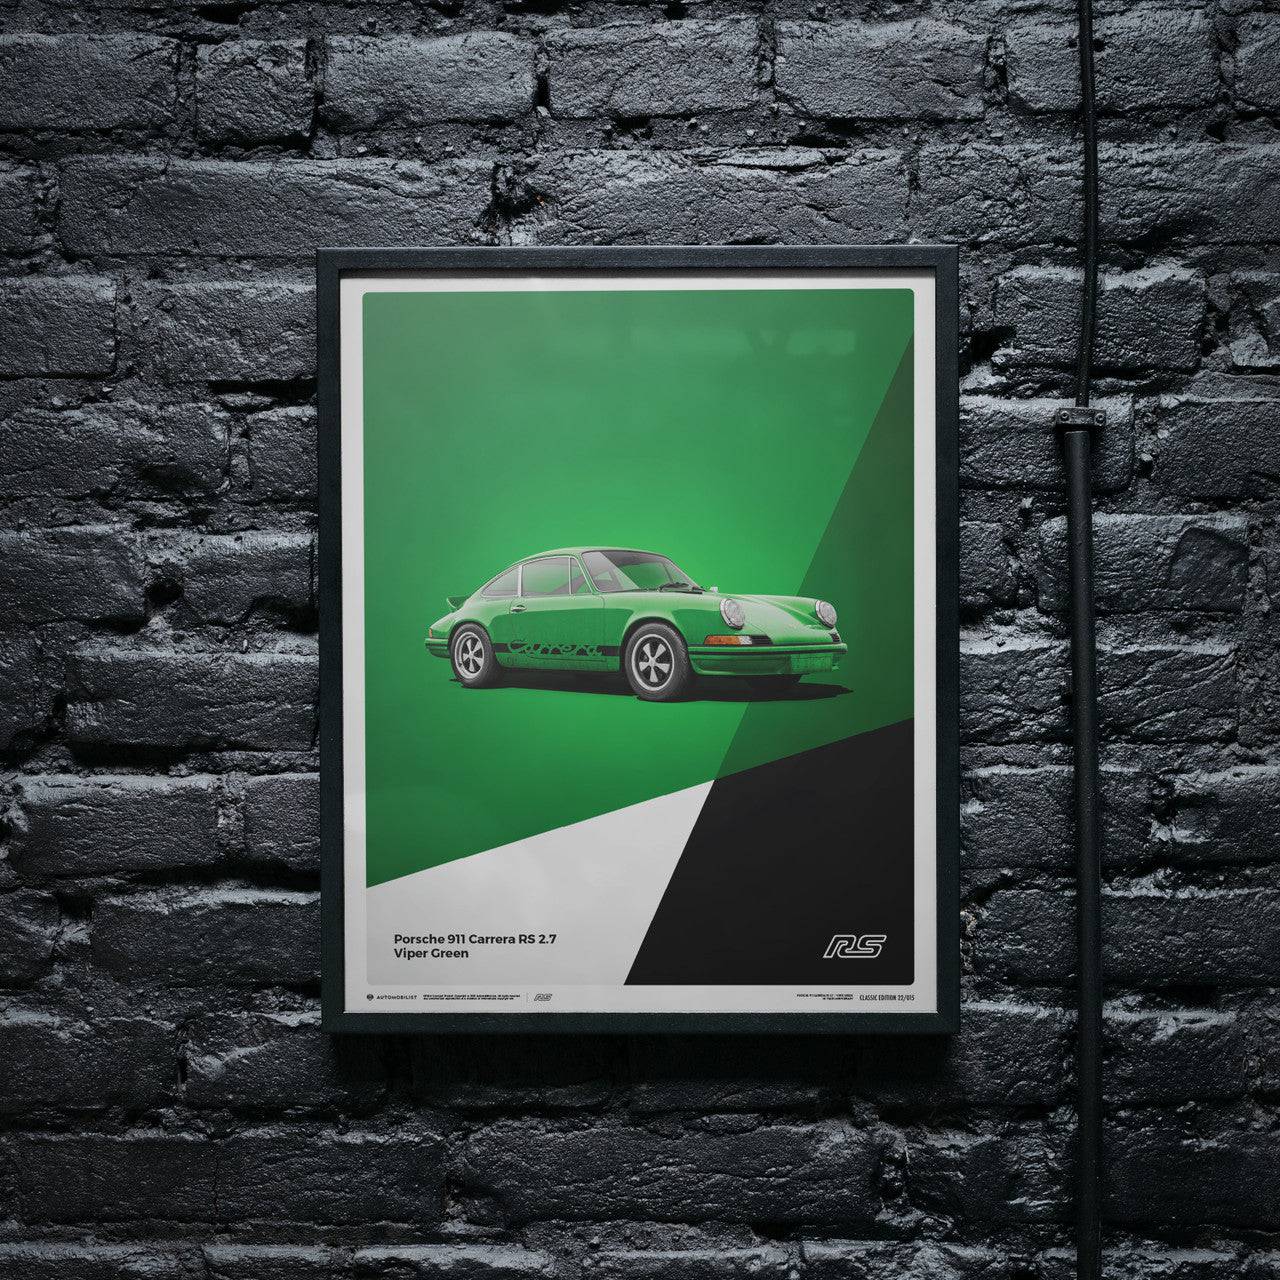 Porsche Monza Poster Wall Sign 